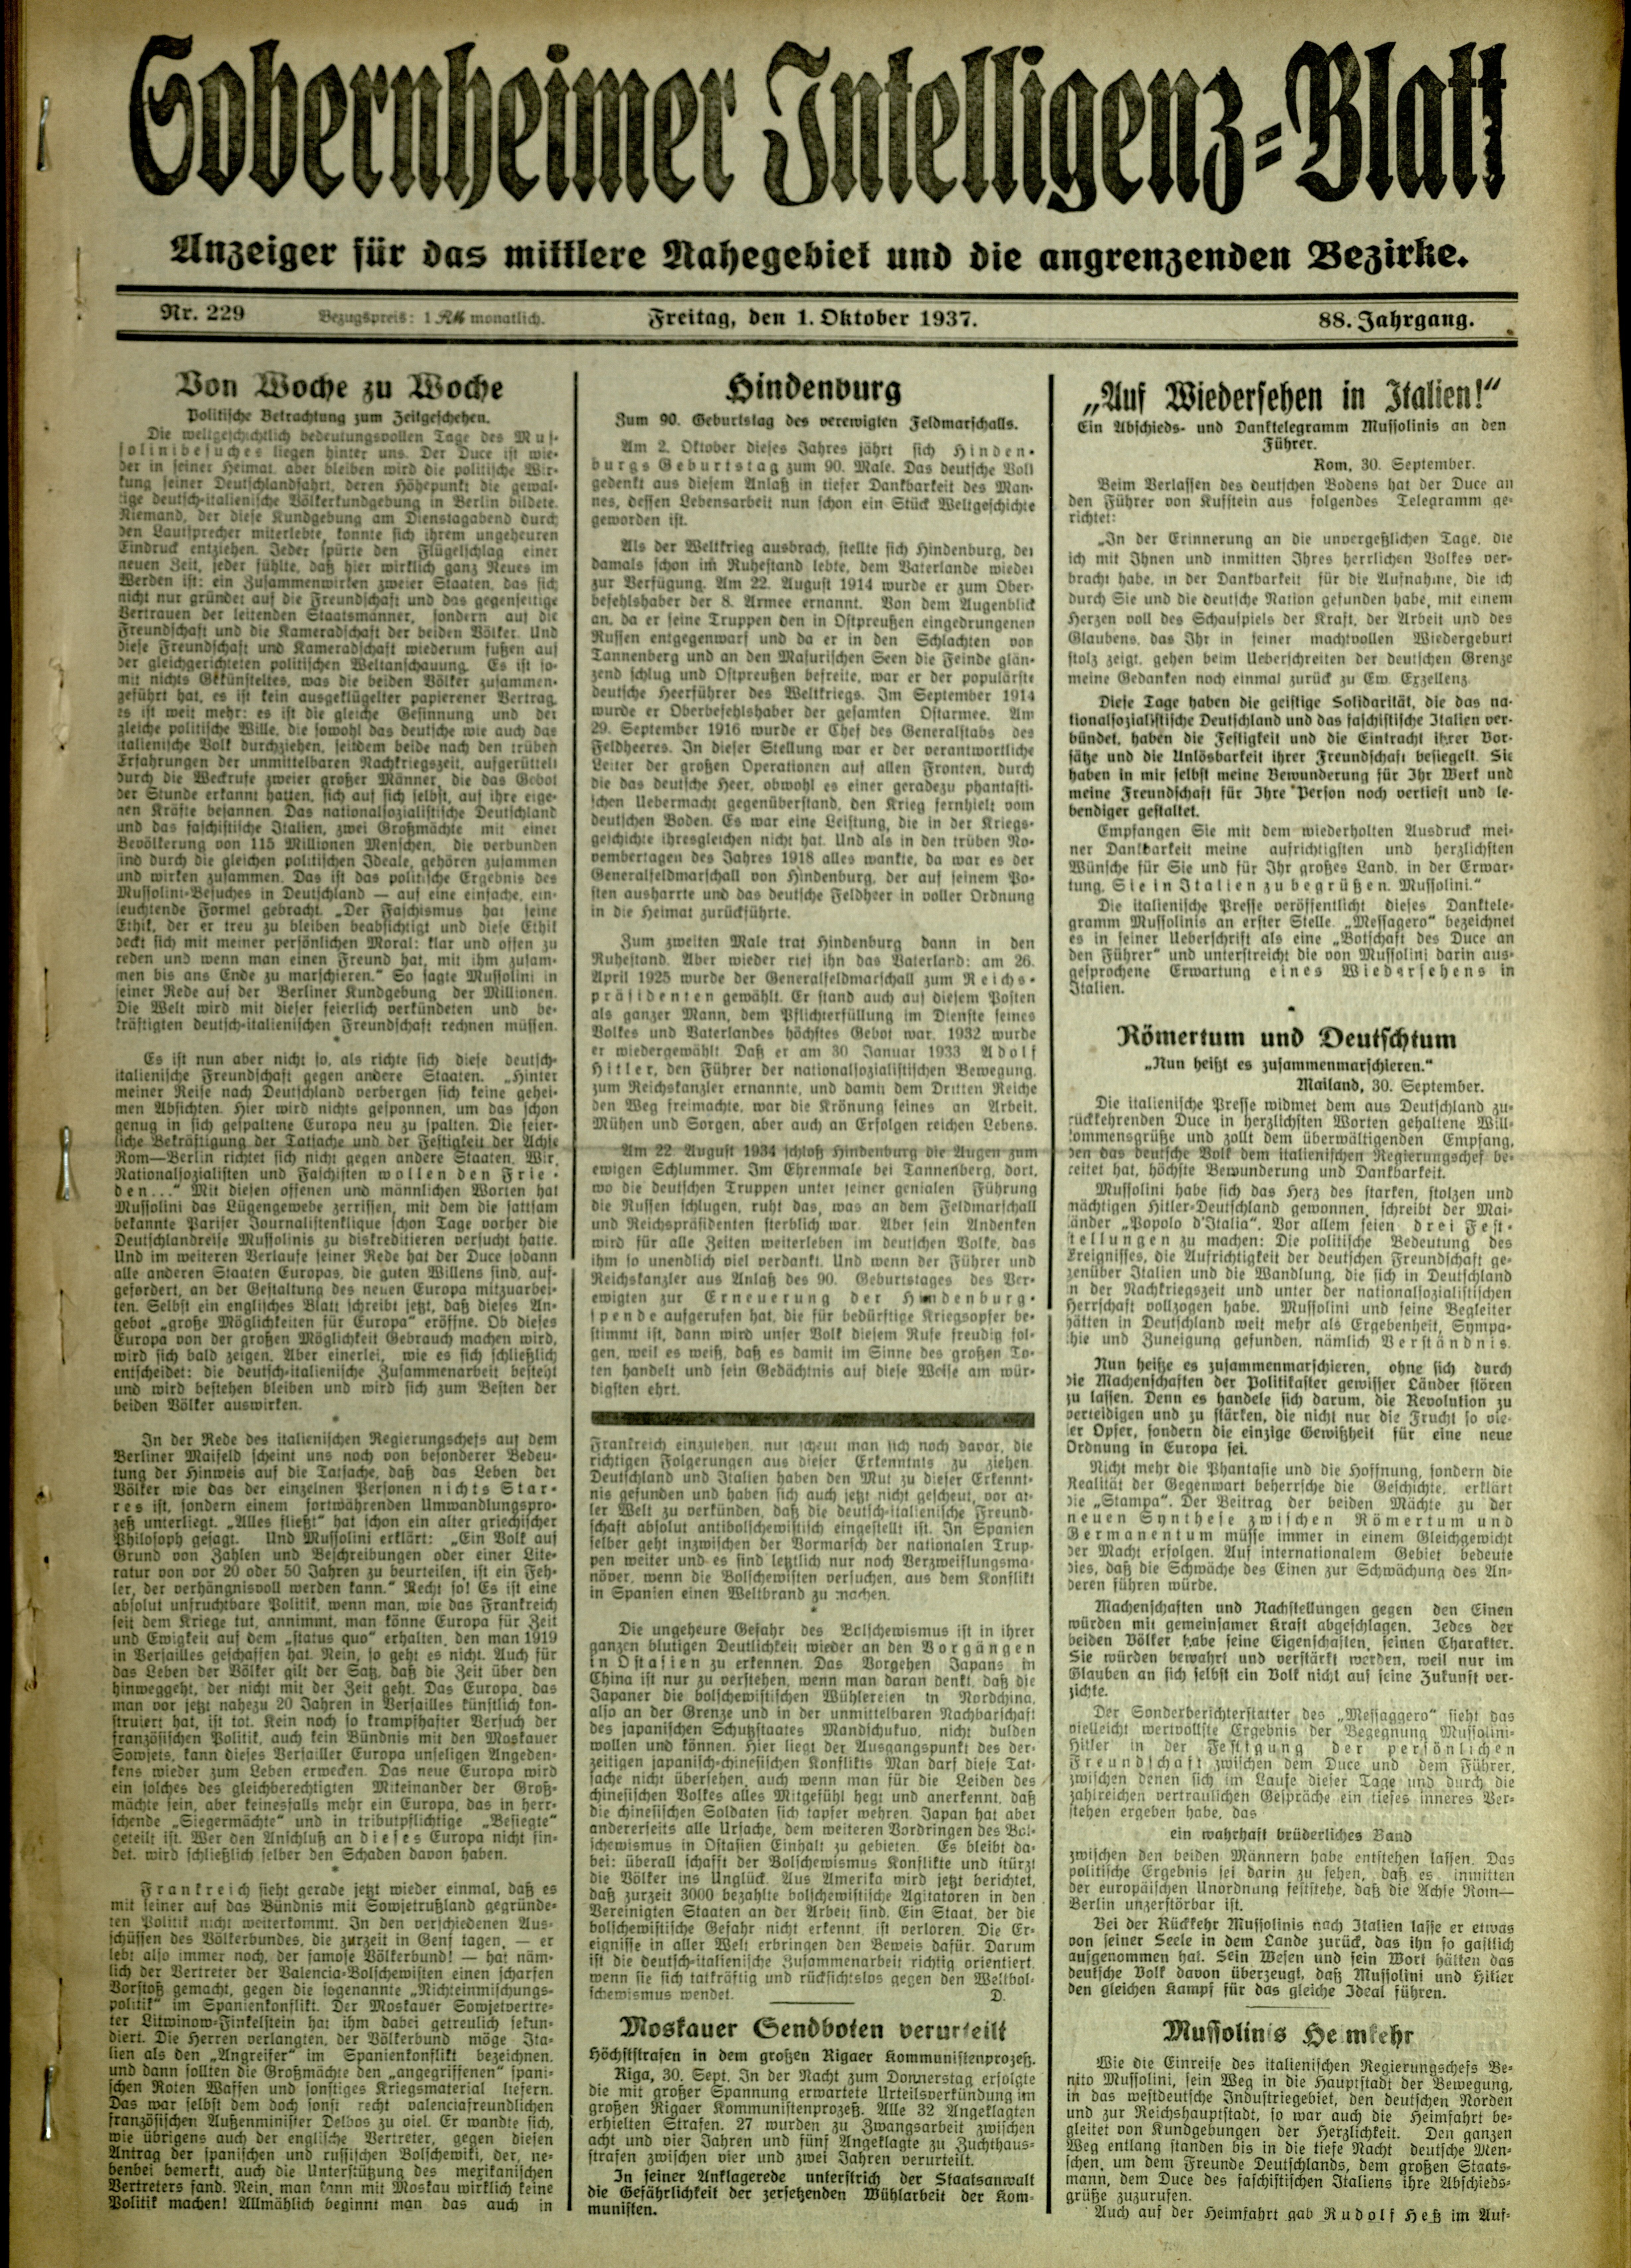 Zeitung: Sobernheimer Intelligenzblatt; Oktober 1937, Jg. 88 Nr. 229 (Heimatmuseum Bad Sobernheim CC BY-NC-SA)